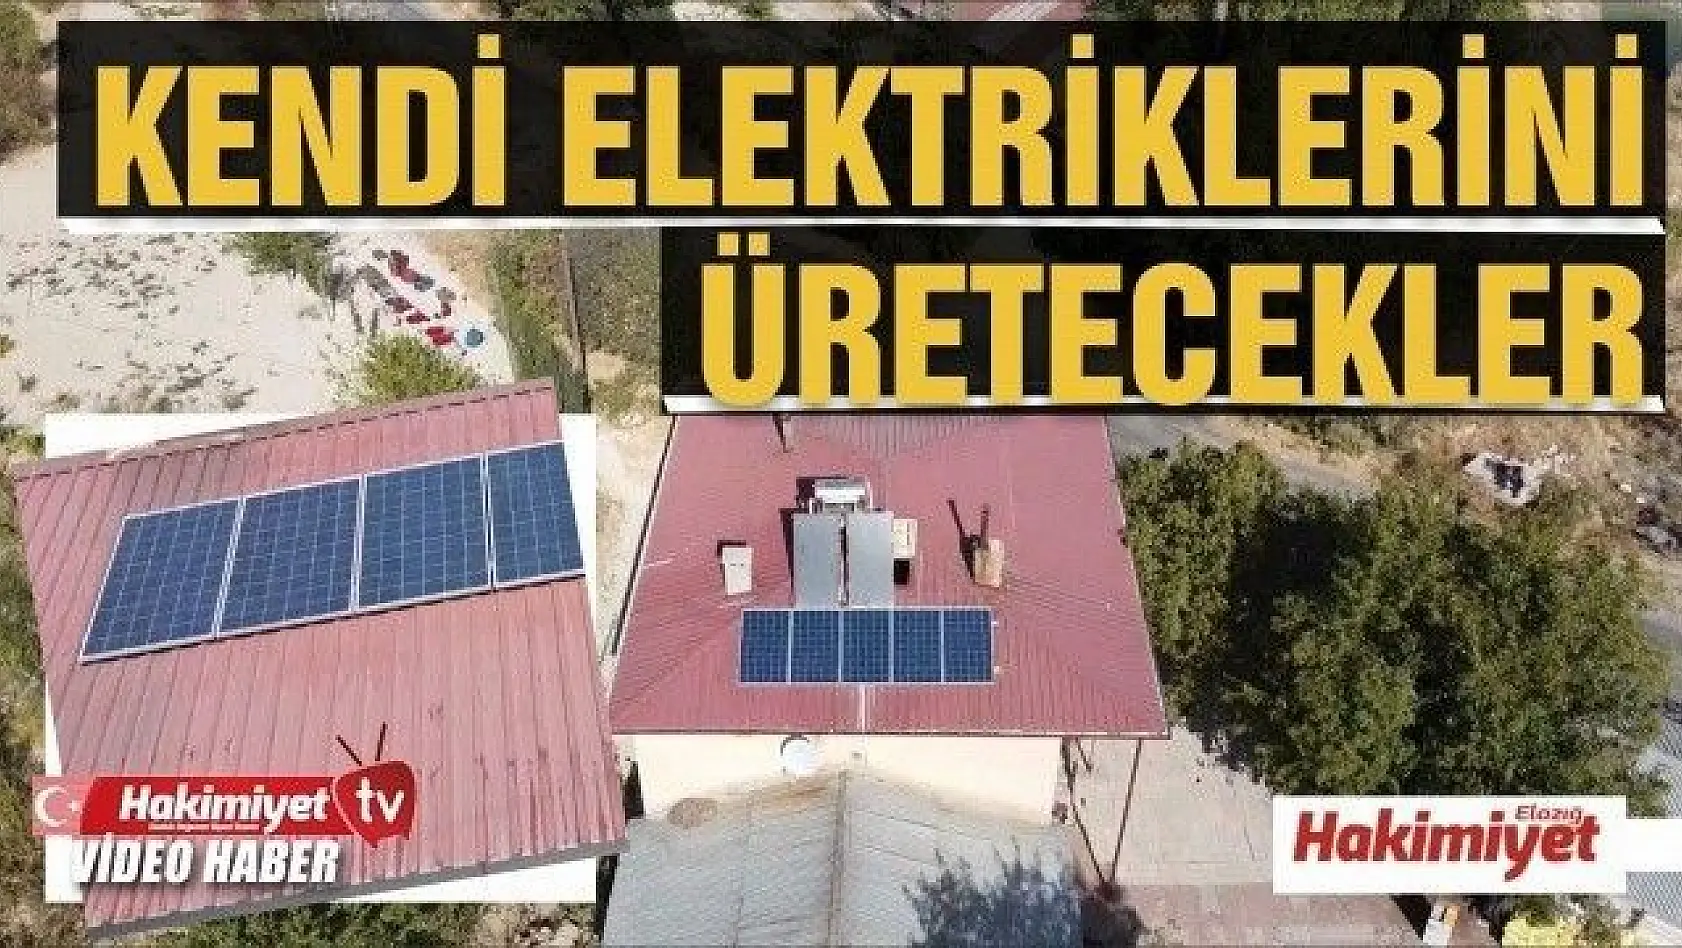 2 köyde çatılara kuruldu, artık kendi elektriklerini üretecekler